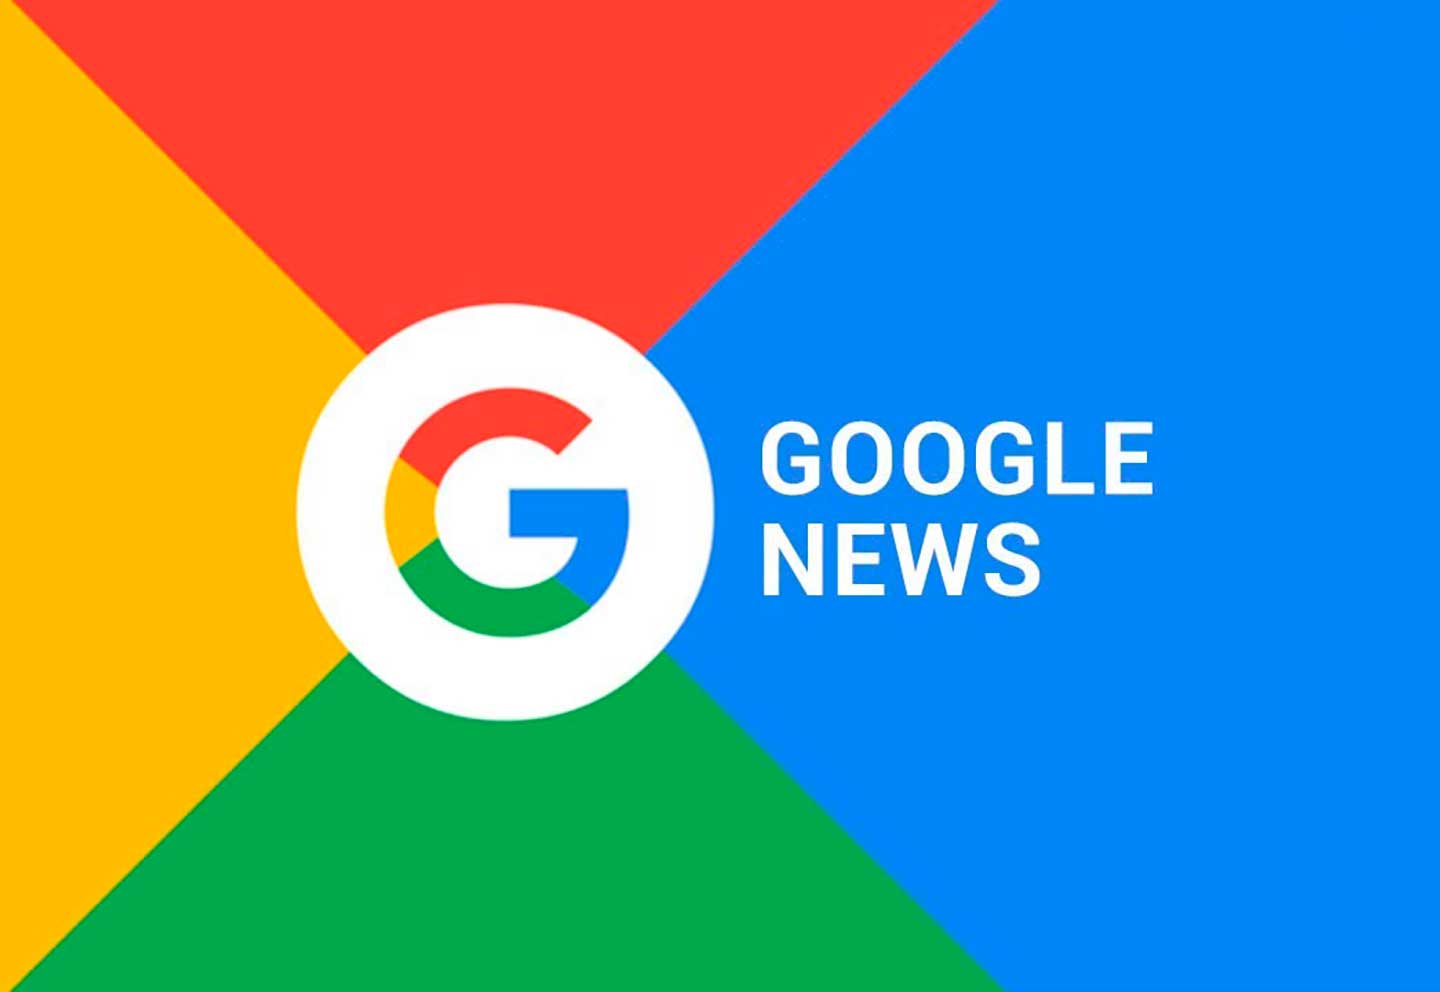 Специалист Google рассказал, что за нарушения в Новостях и Discover компания накладывает ручные санкции